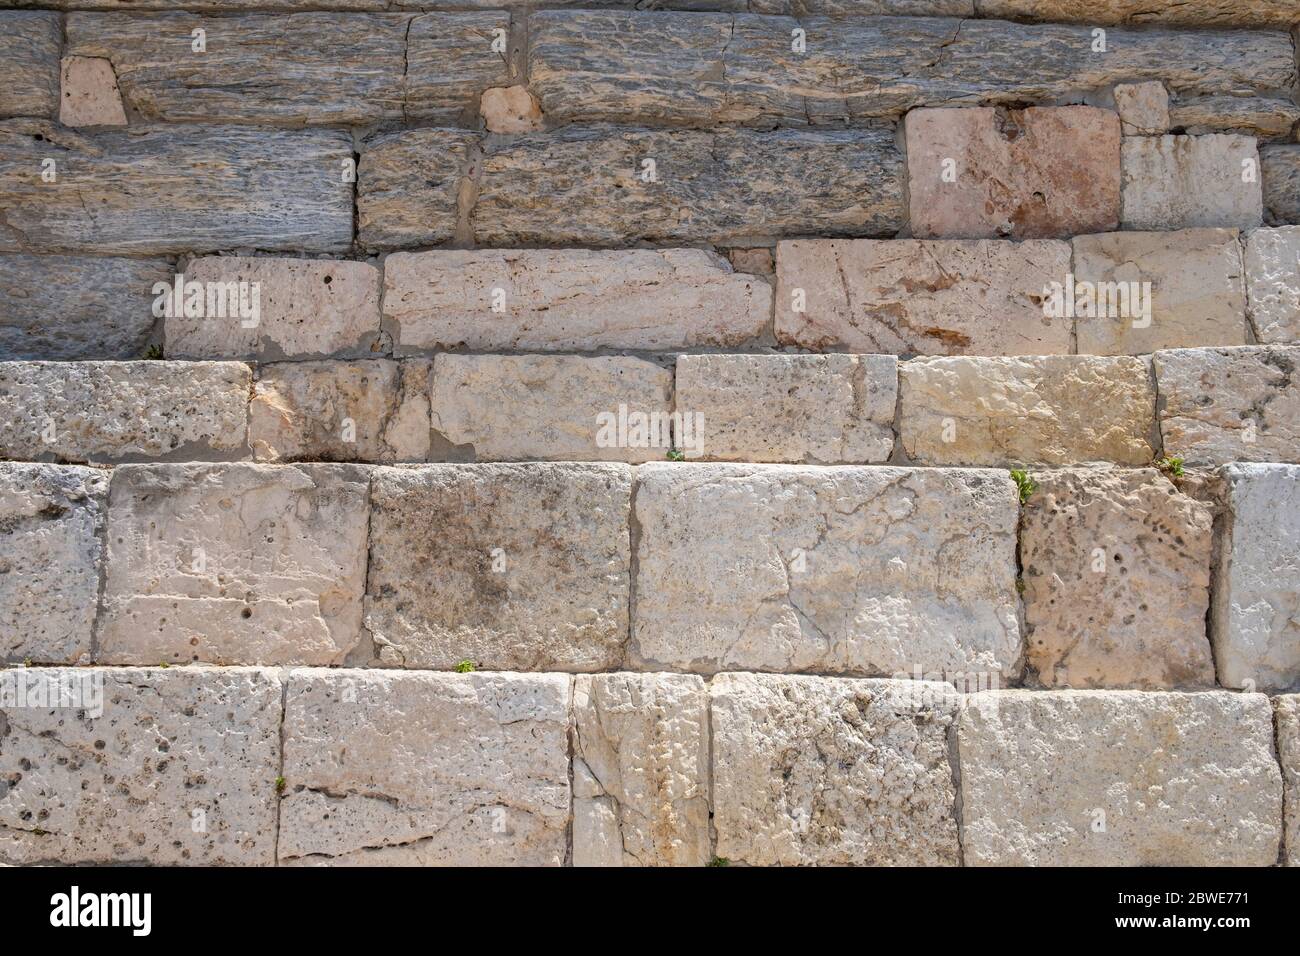 Blocchi di marmo, fondo in pietra naturale, colore beige bianco, marmo greco antico, piantana in acropoli con vista in primo piano Foto Stock